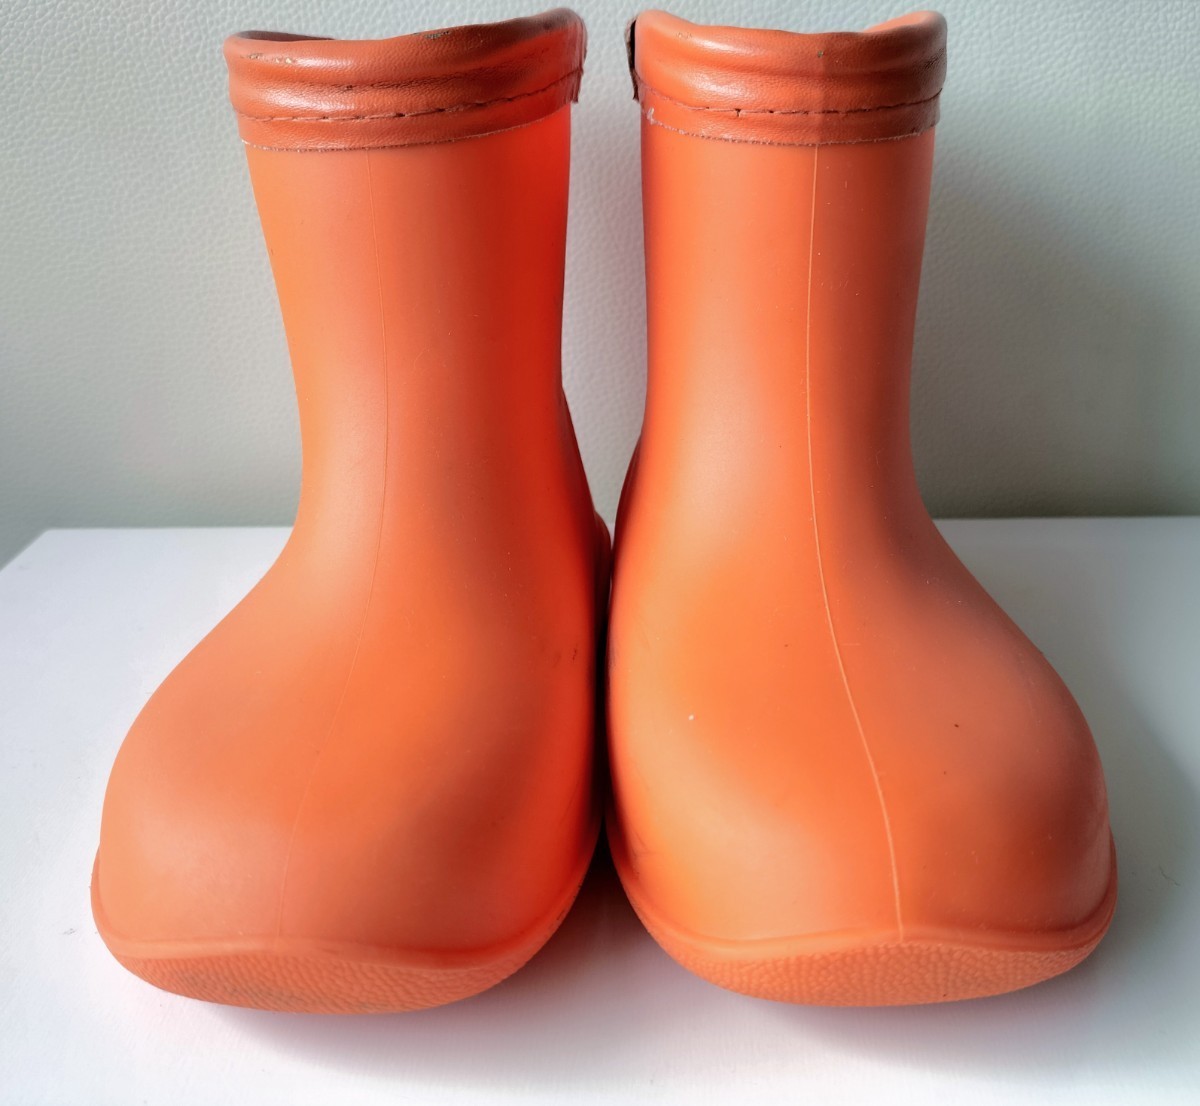  Kids влагостойкая обувь * orange сапоги * девочка *16.0cm